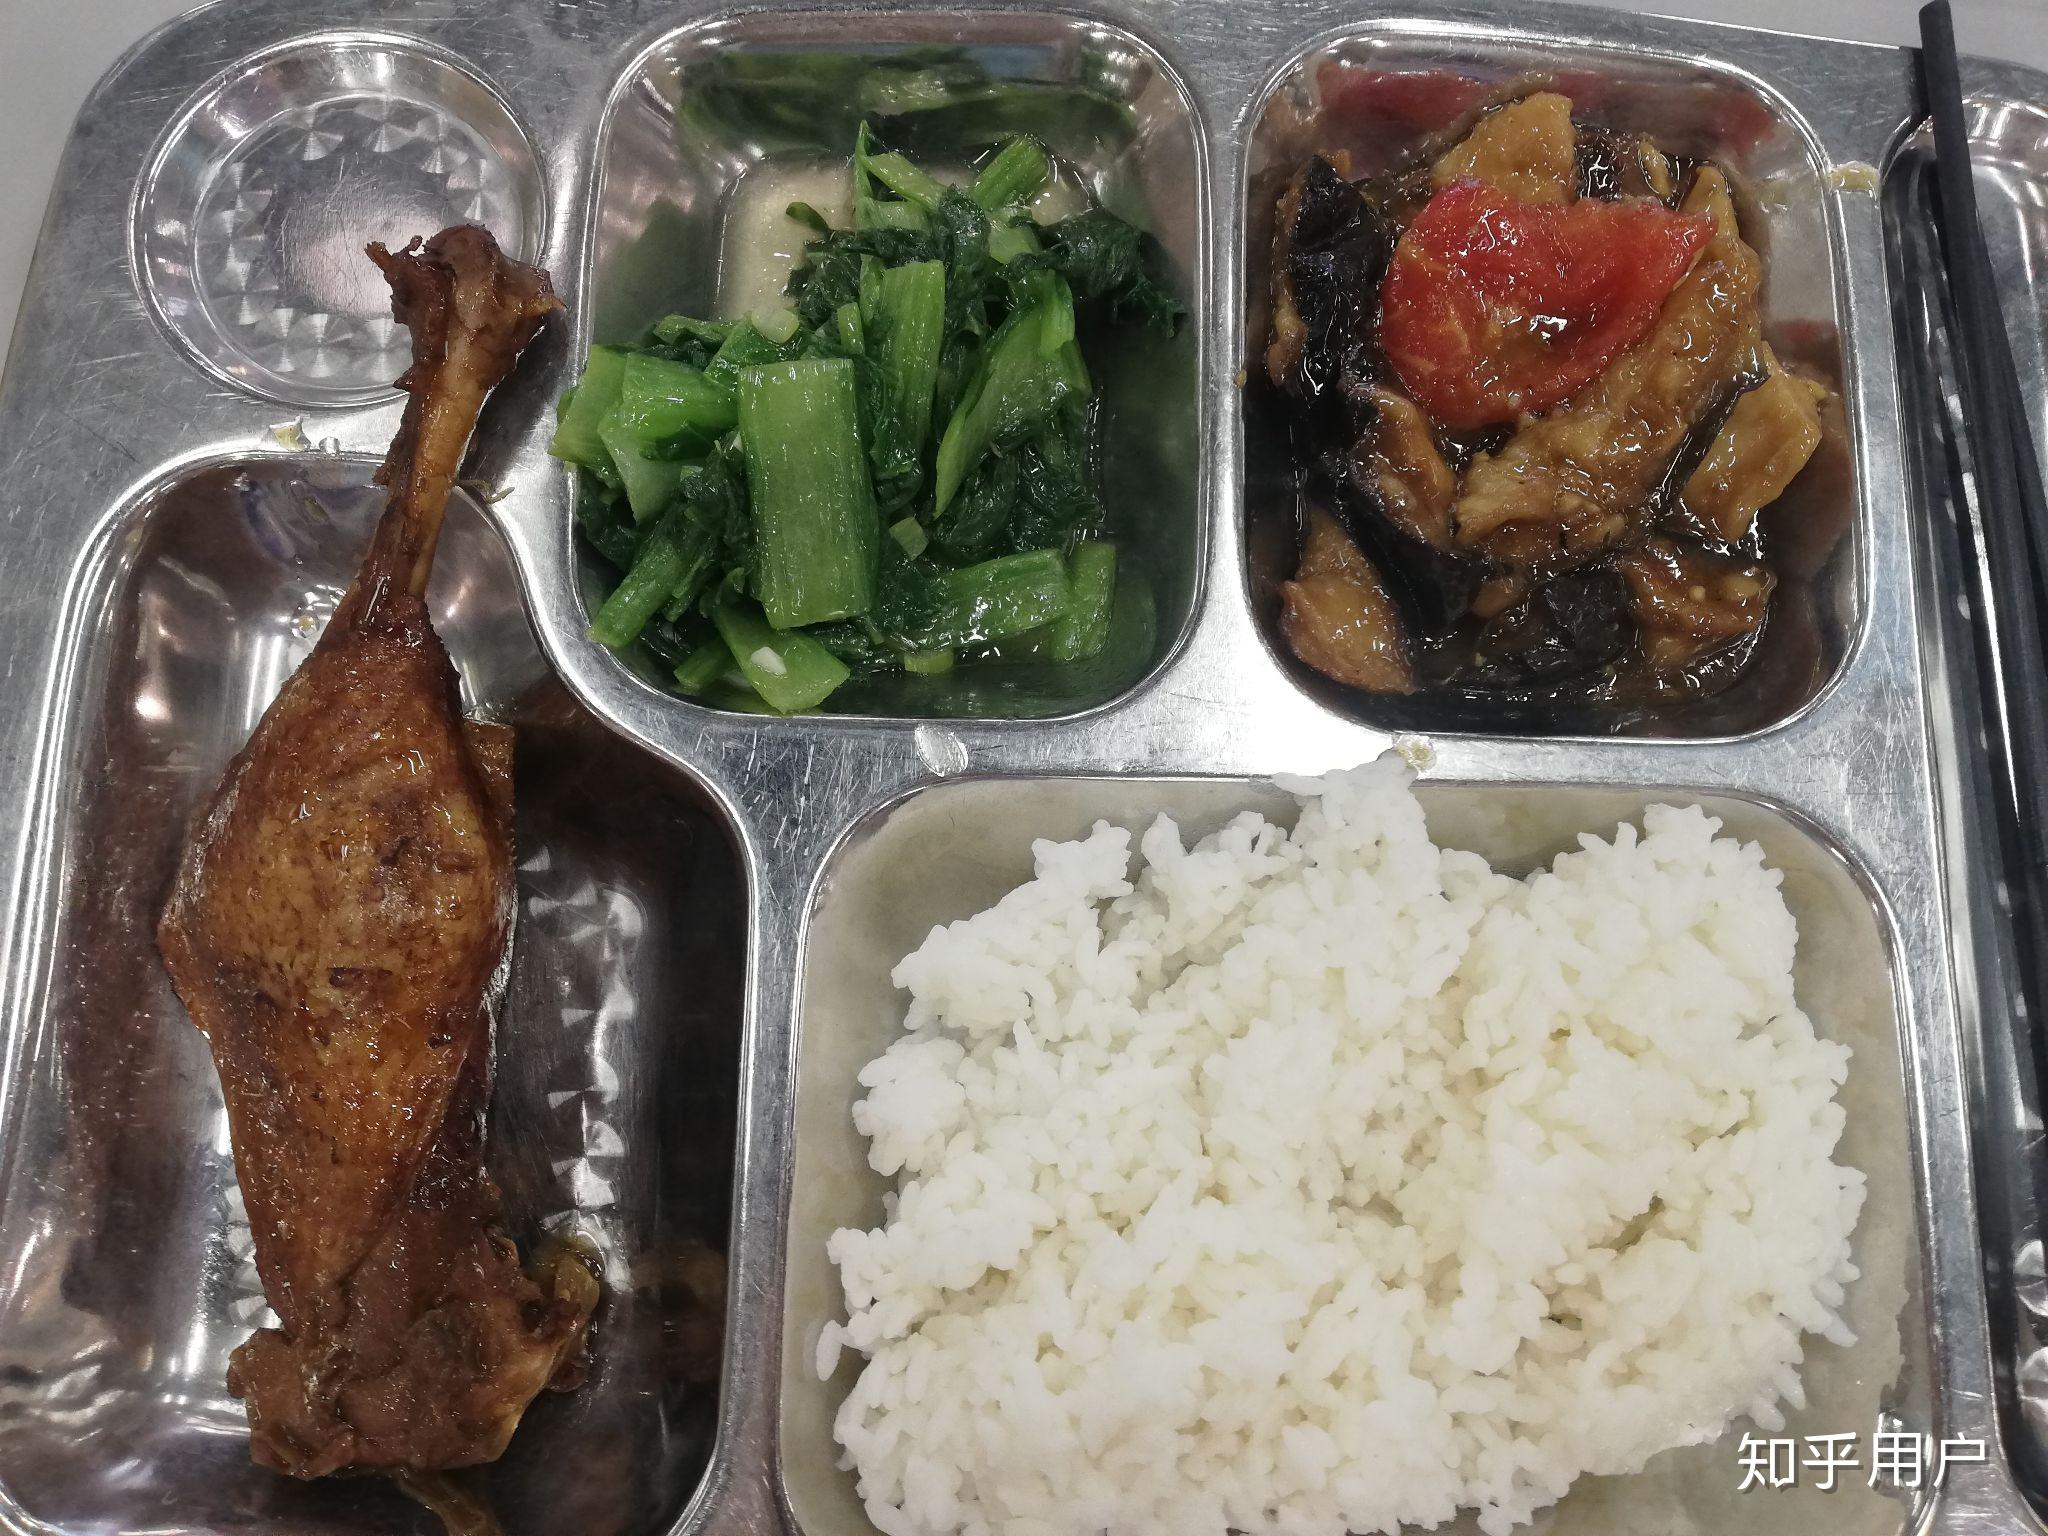 磐石高中校園廚房: 1040521晚餐菜色